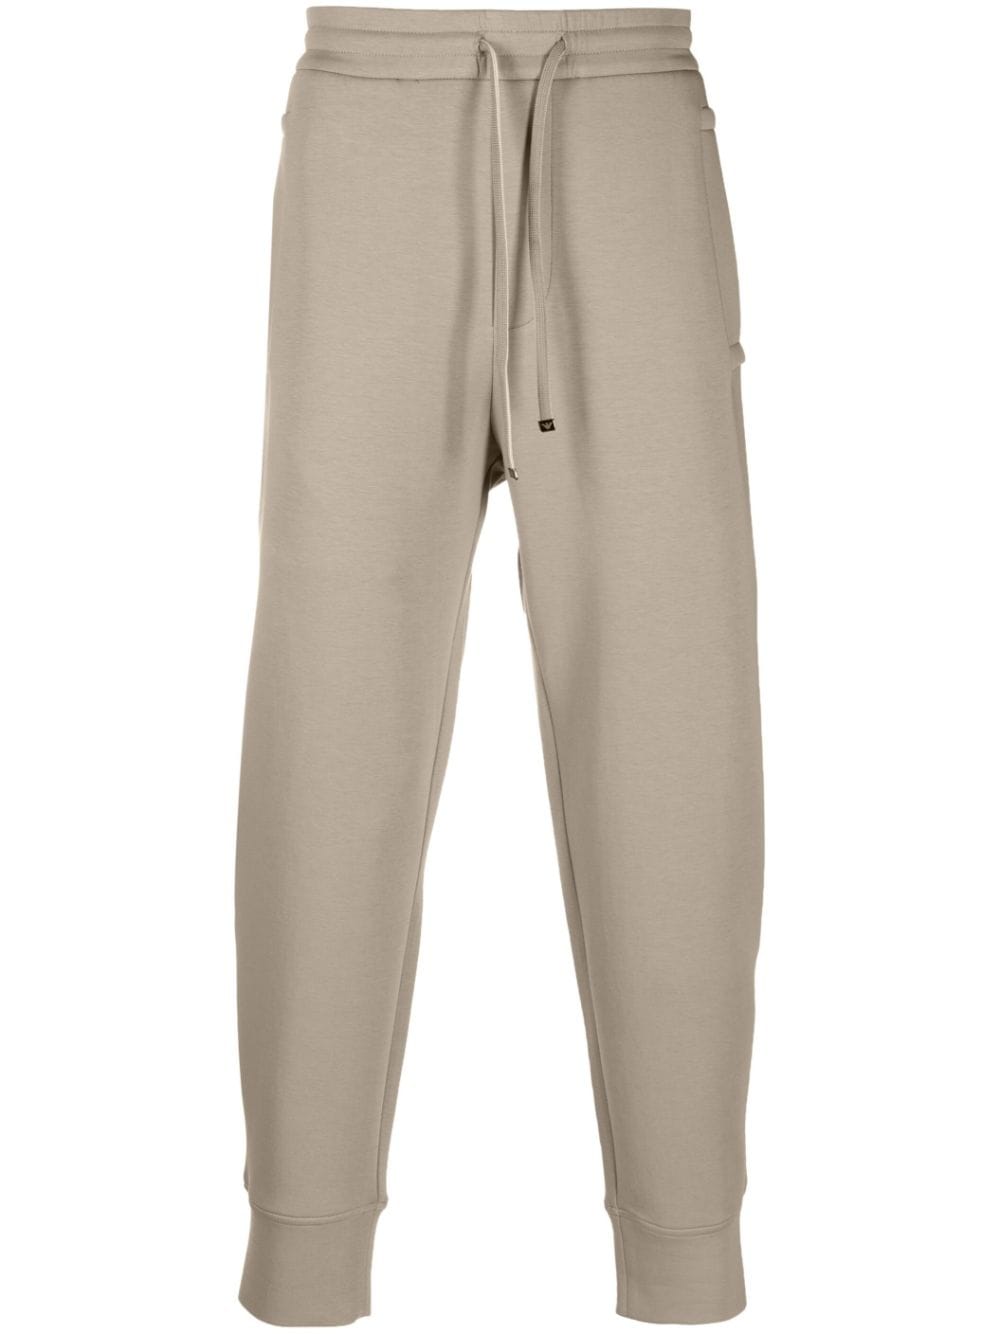 Pantalone Jogger in Double Jersey / Beige - Ideal Moda